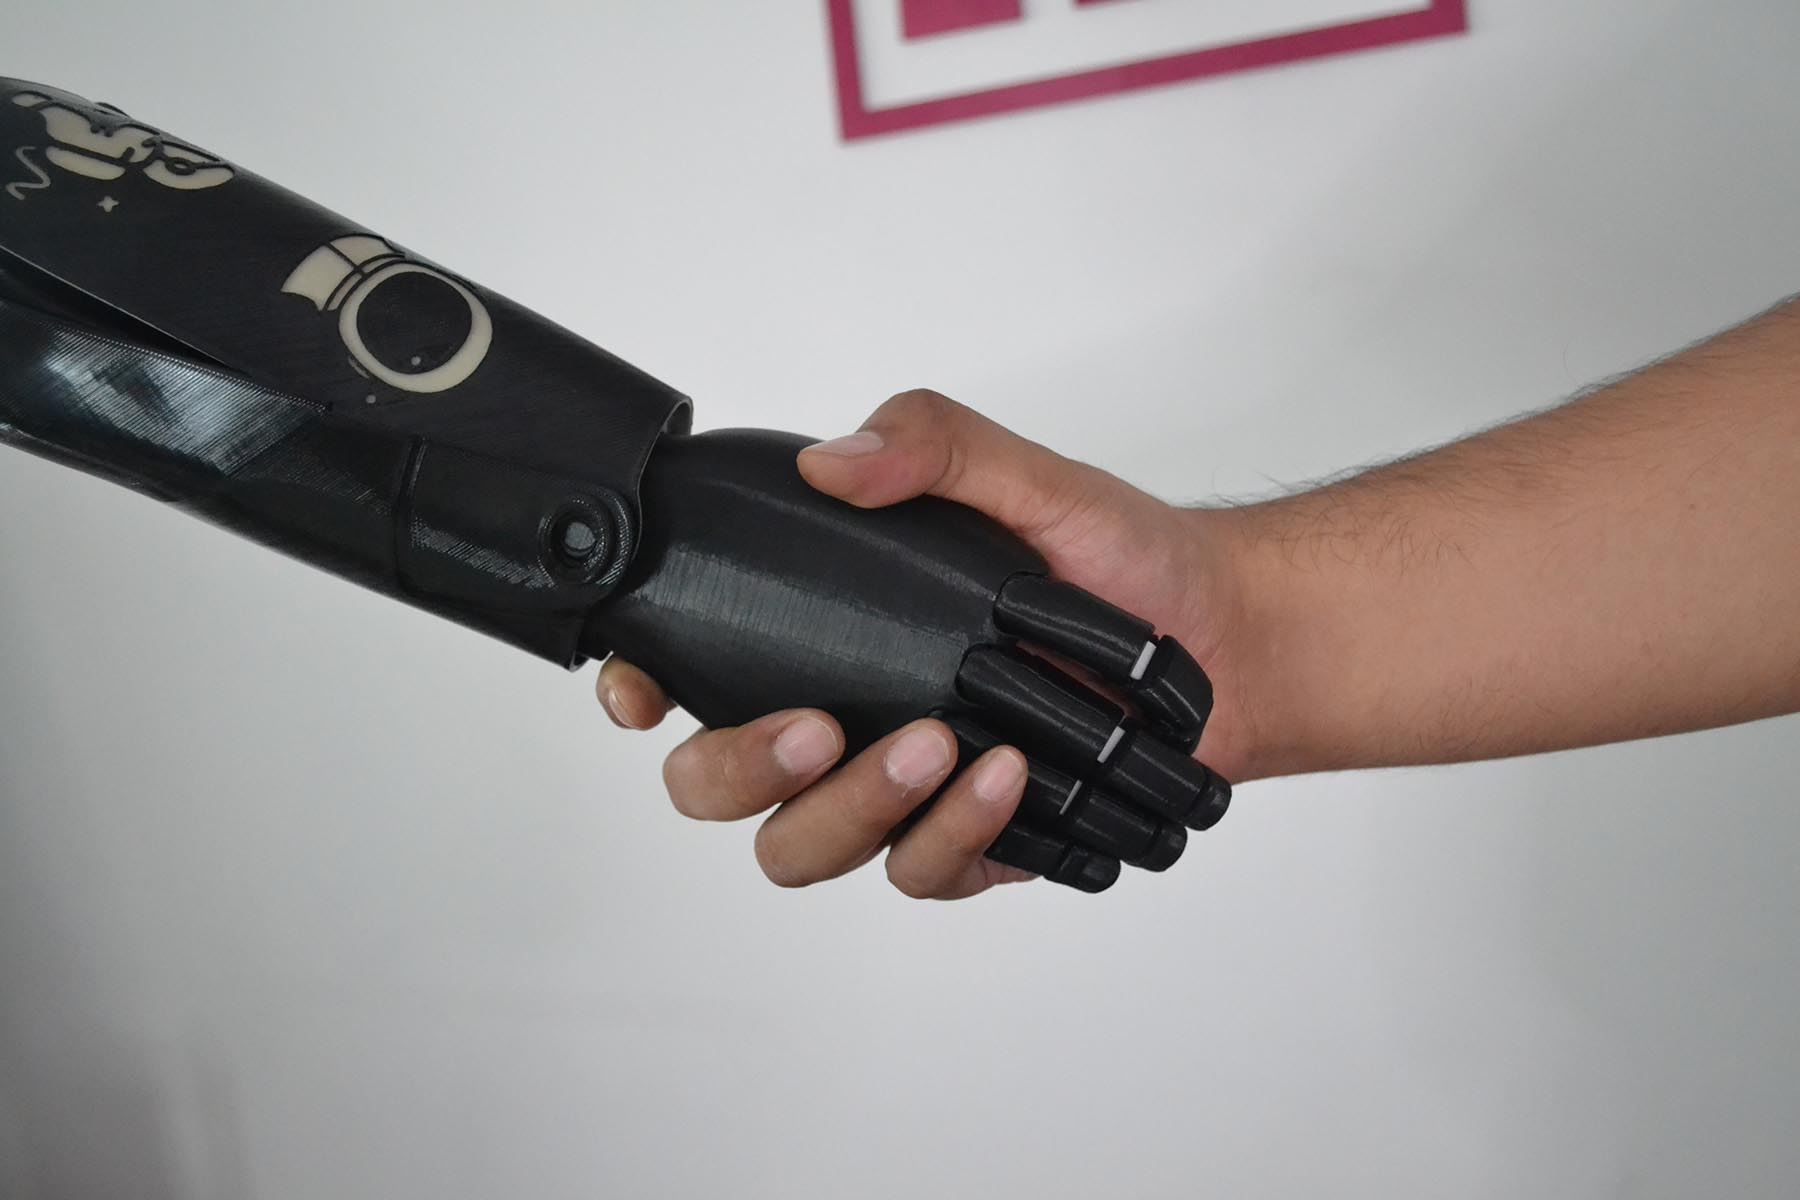 Las prótesis desarrolladas por Pixed Corp son de extremidades superiores (mano, brazo y hombro).